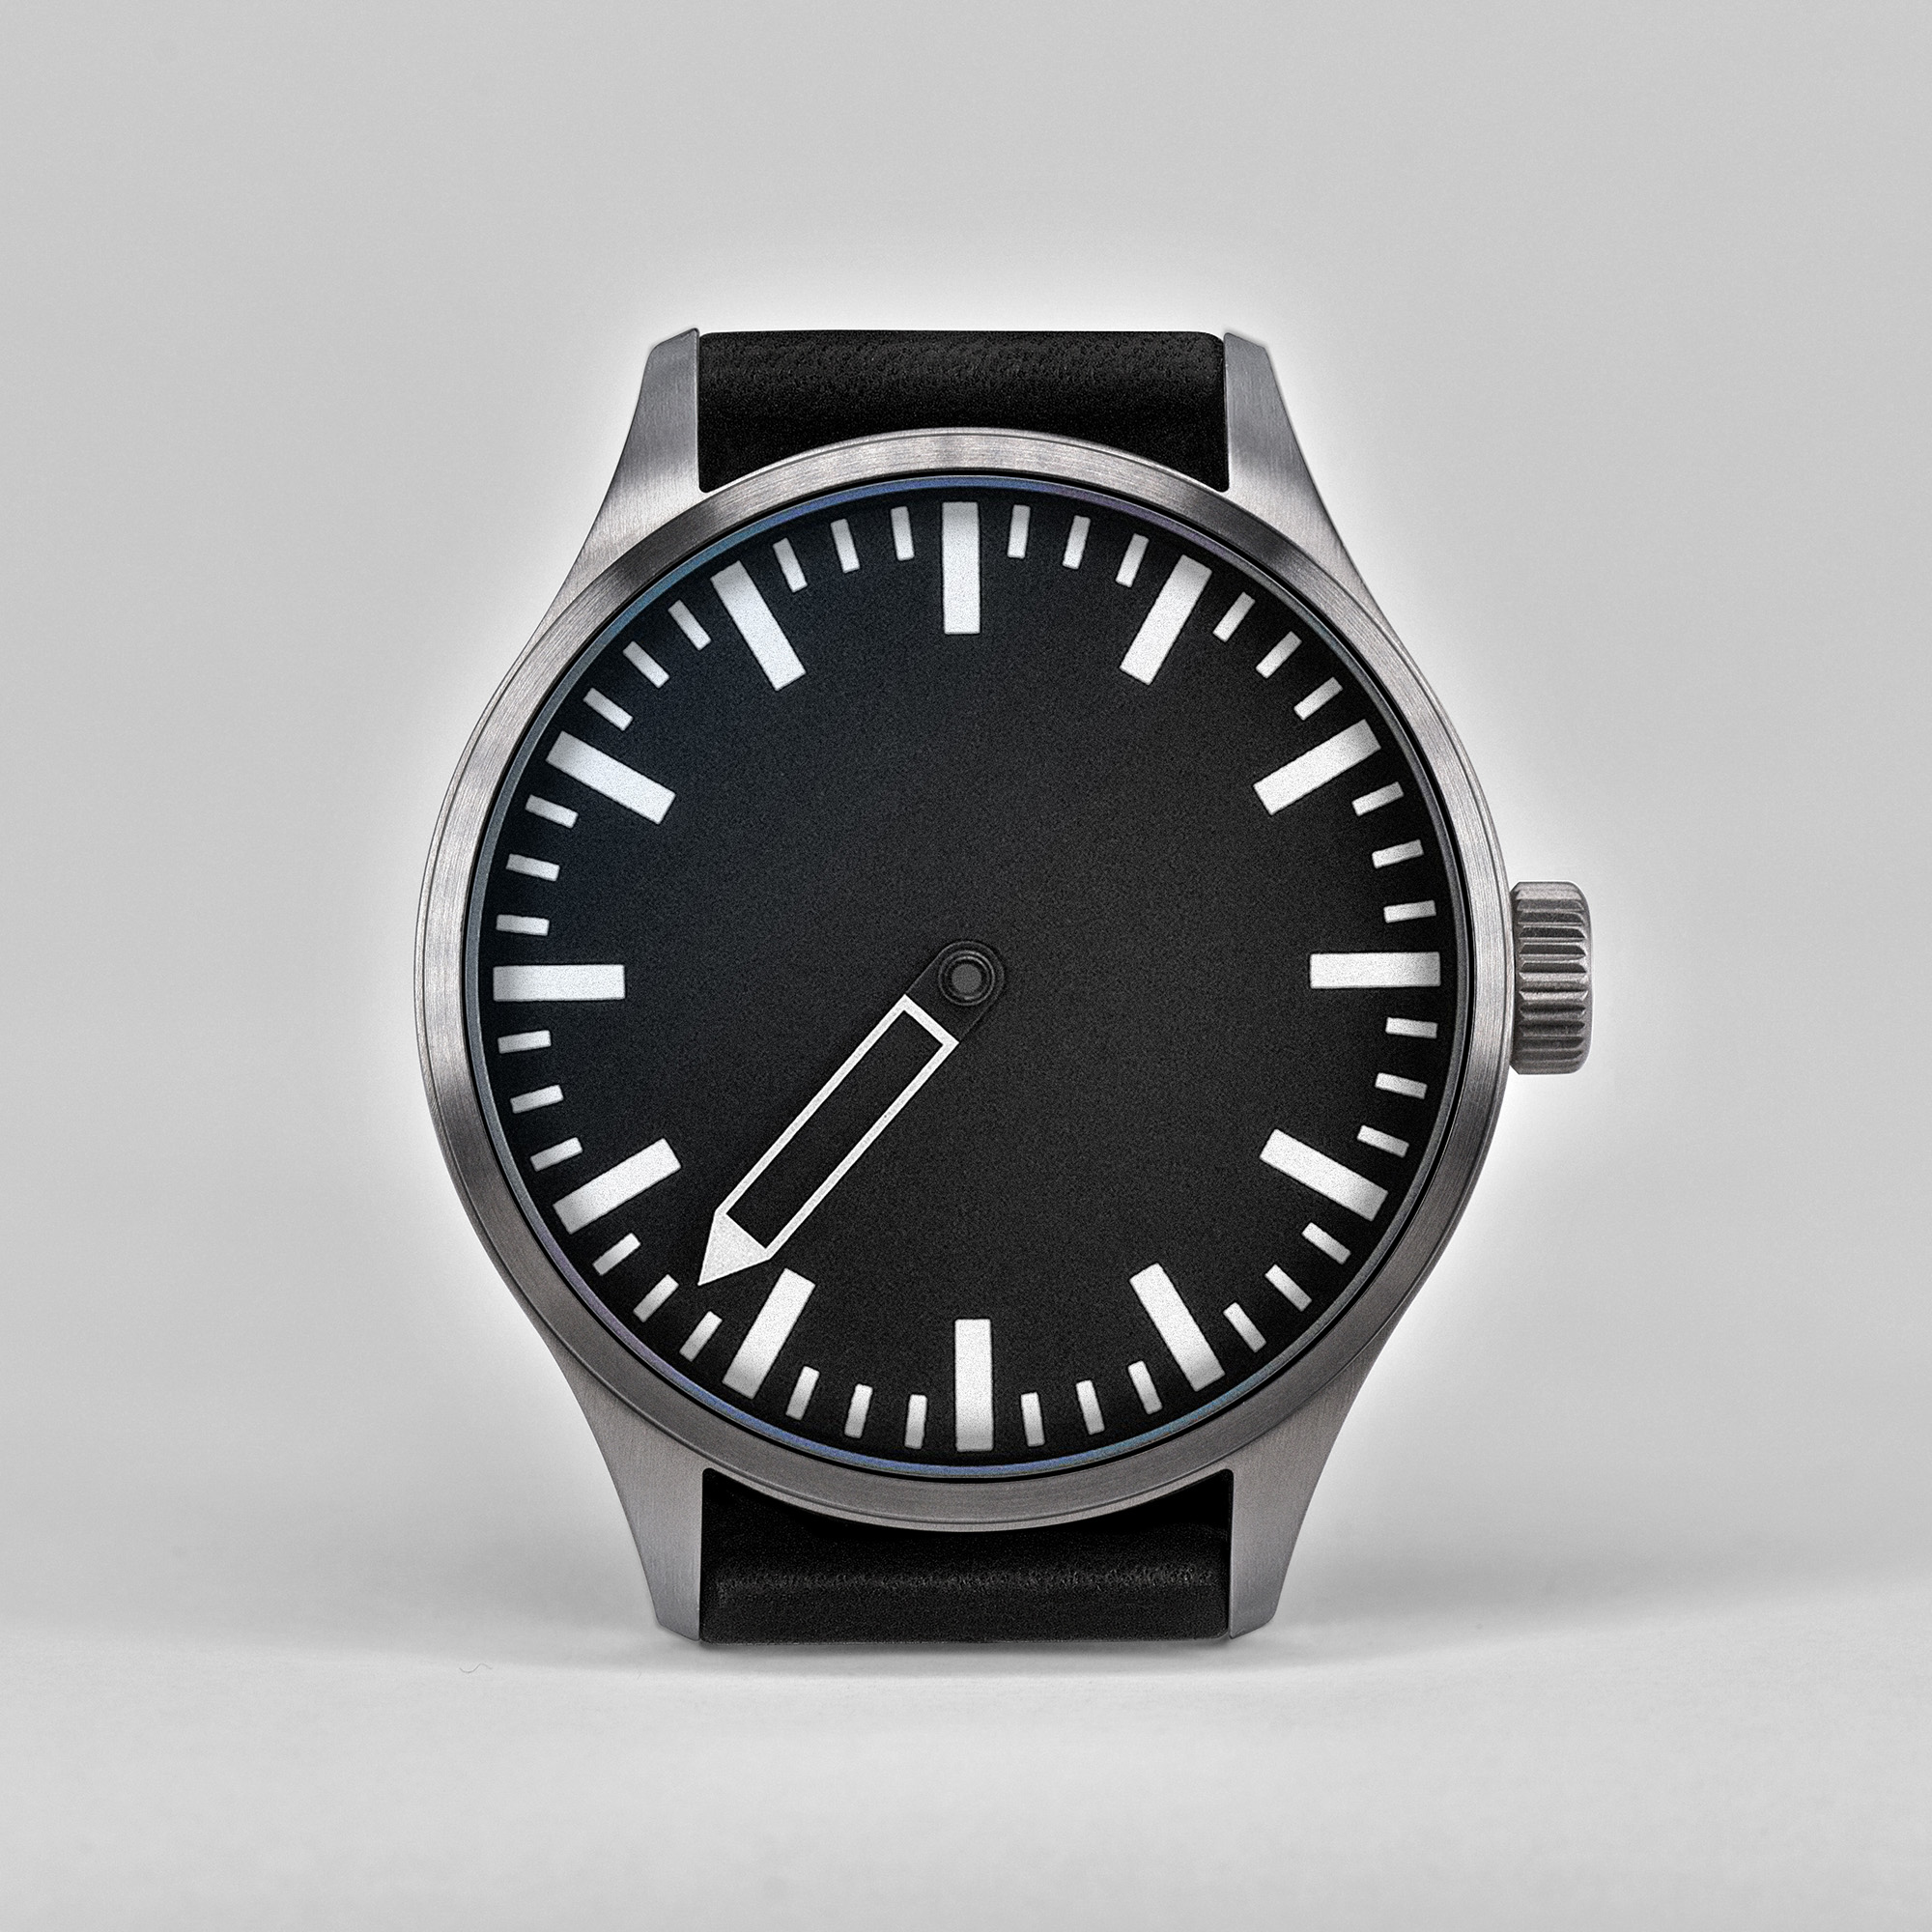 Single-hand design watch Defakto Eins Brutalist Design Architect Watch Architektenuhr